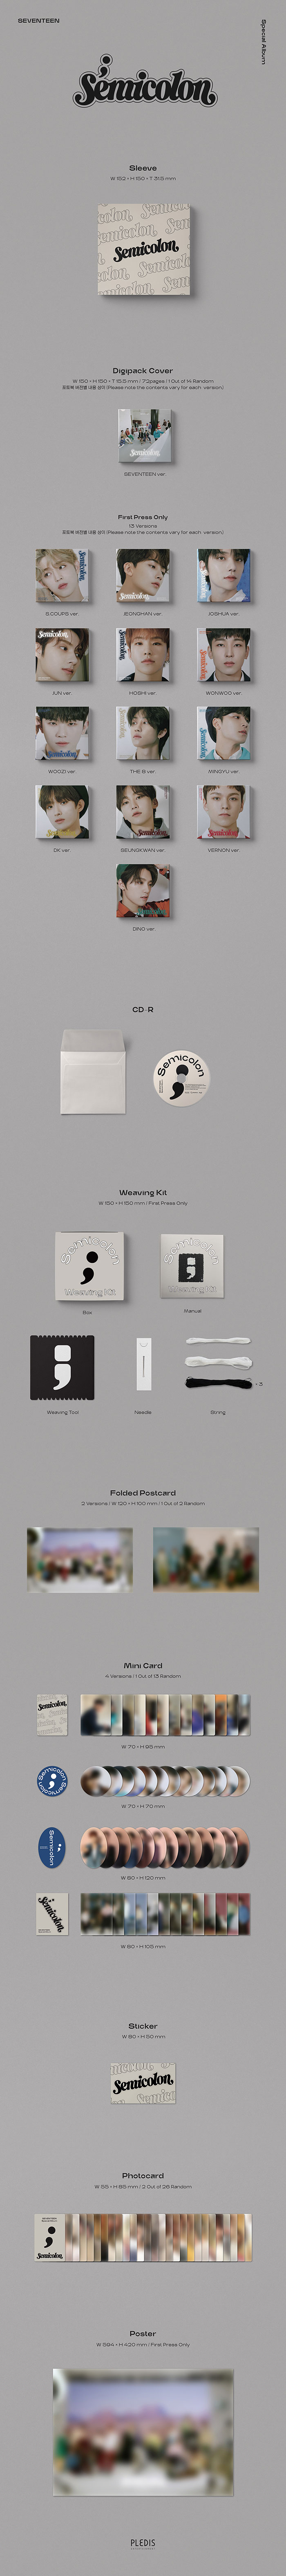 SEVENTEEN Special Album '; [Semicolon]'|韓国・アジア